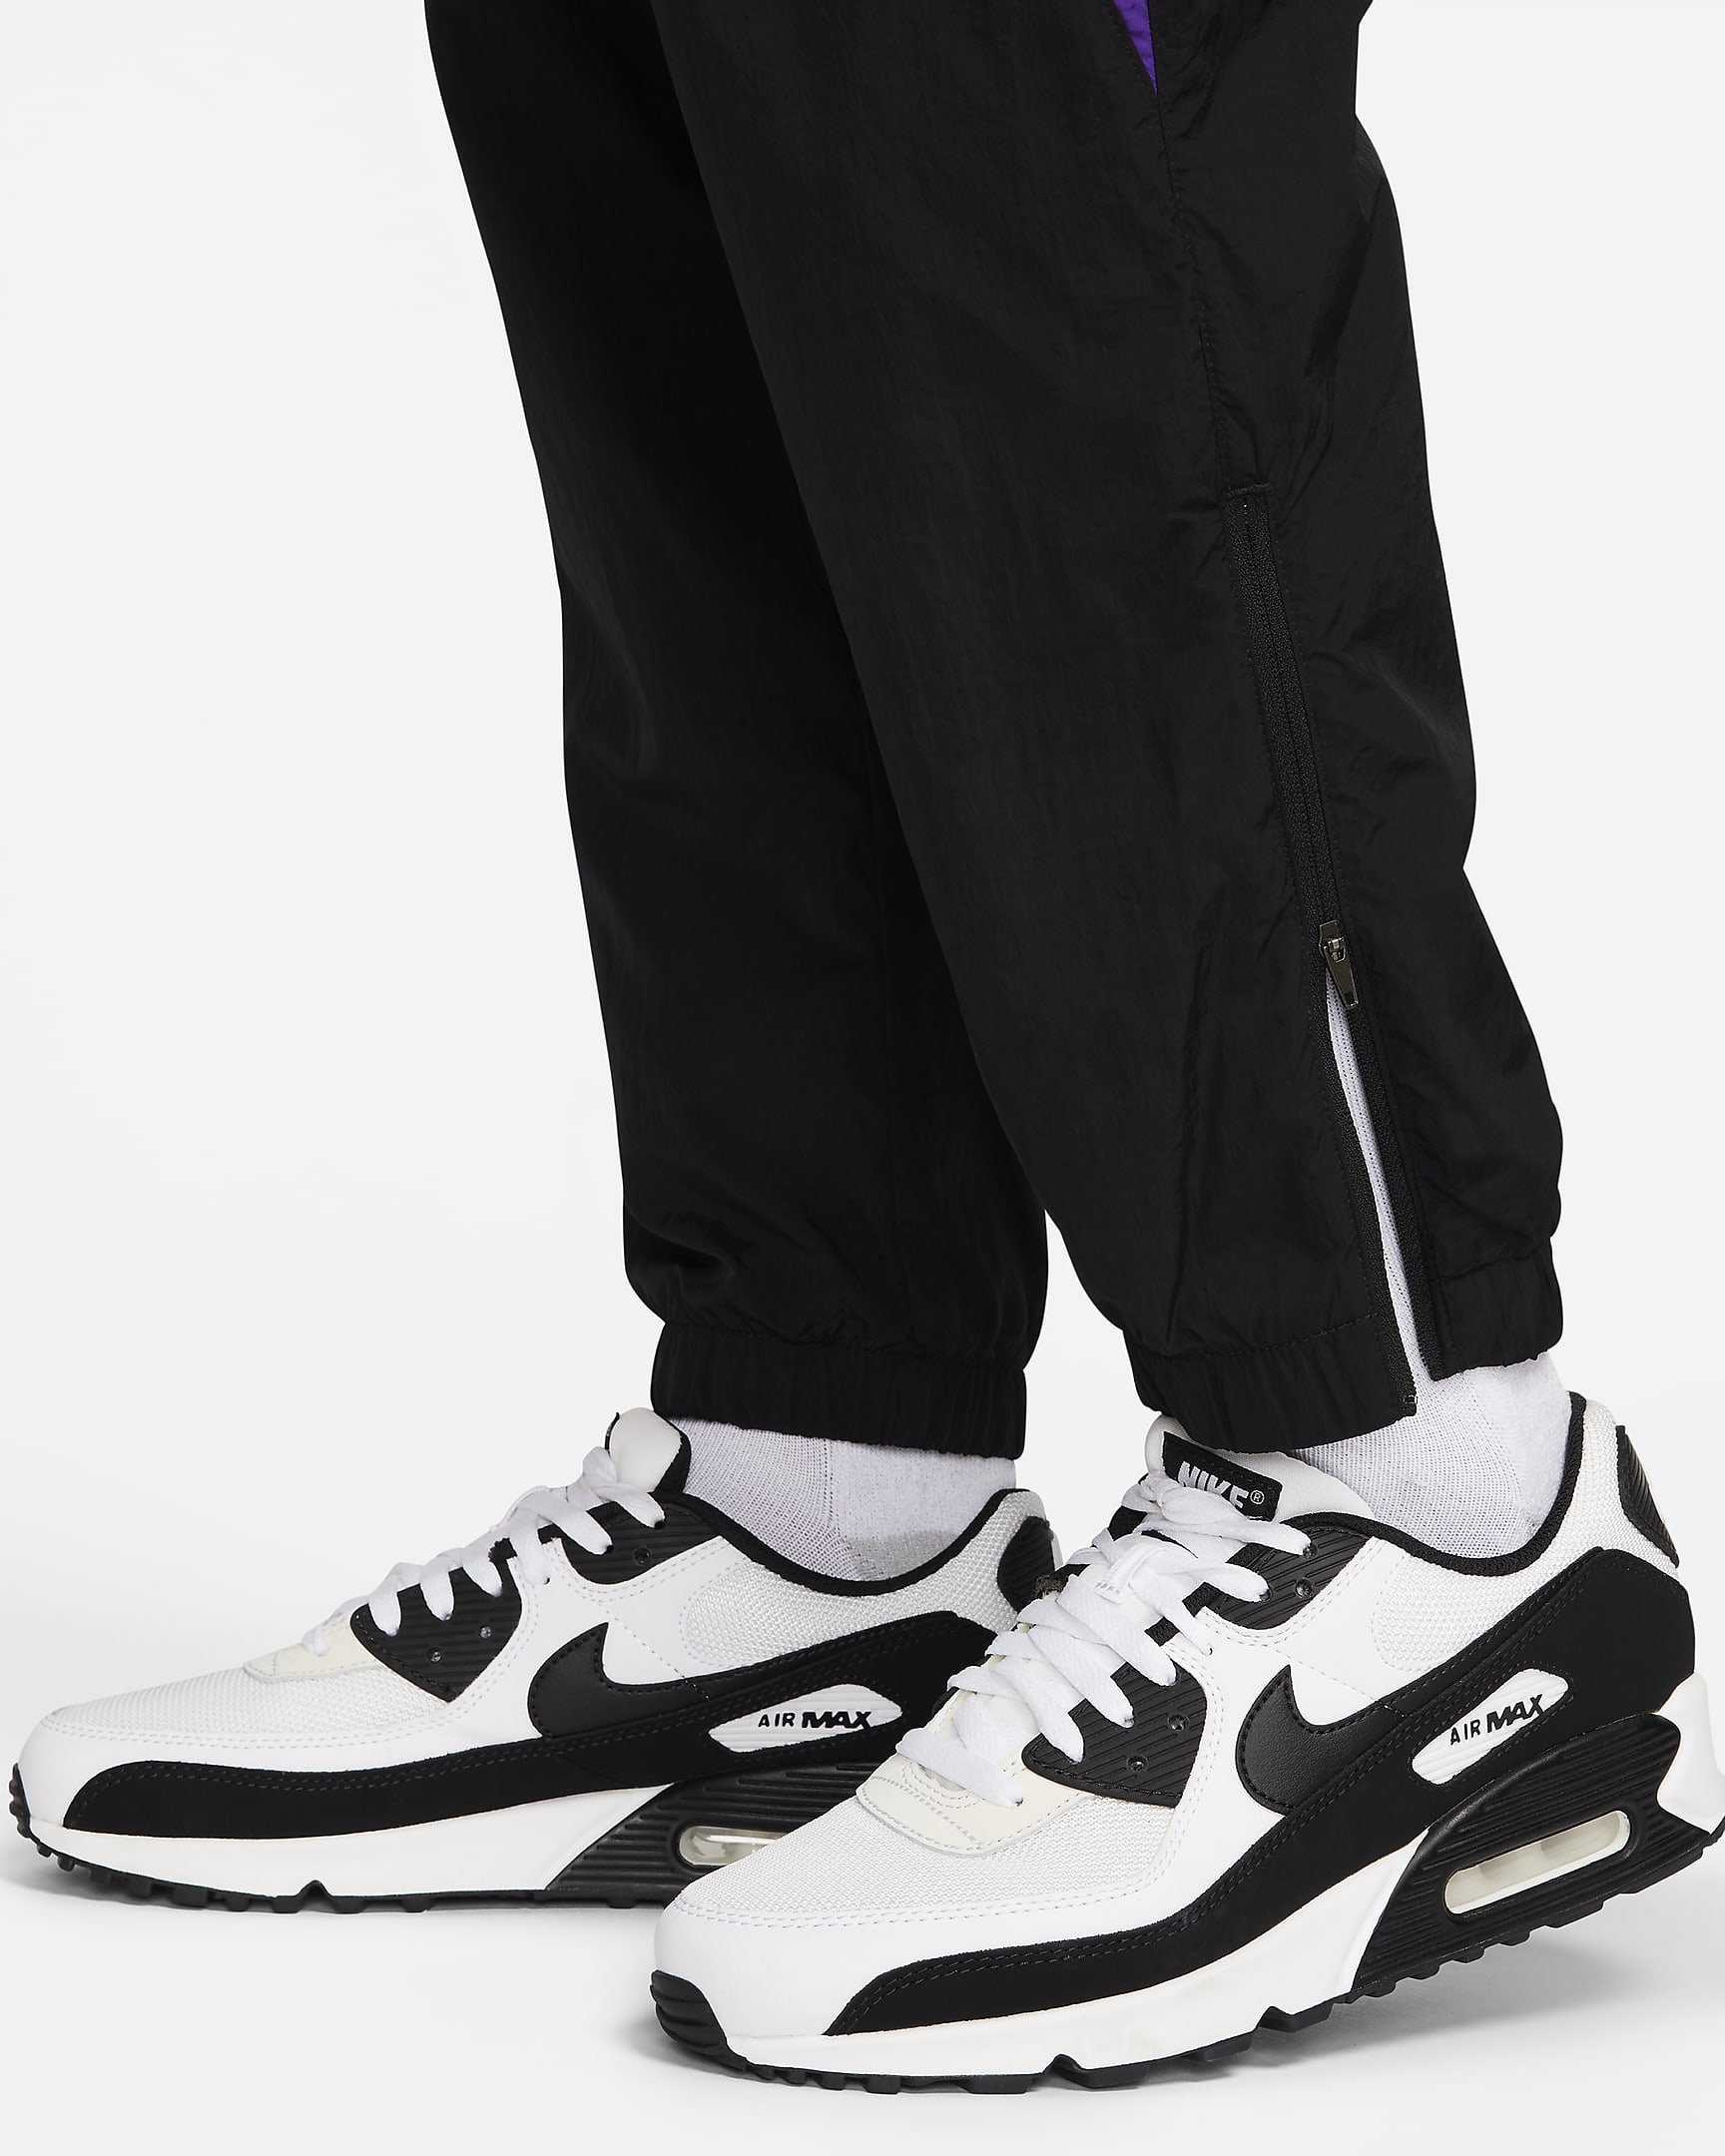 Nike Culture of Football Men's Therma-FIT Repel Football Pants. Nike UK